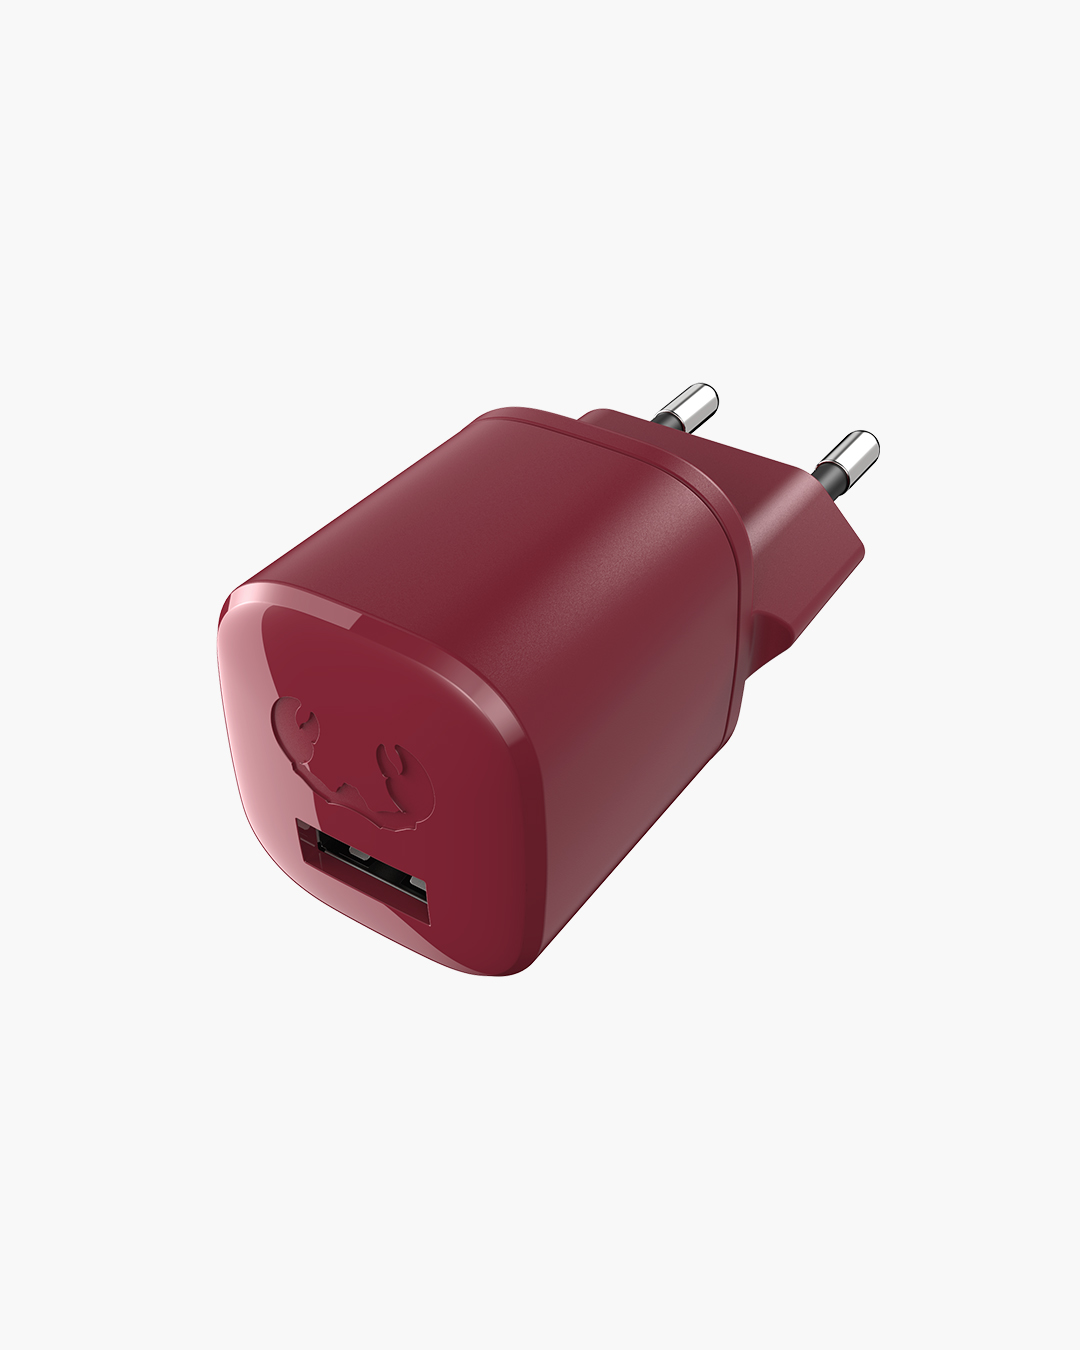 Fresh 'n Rebel - USB Mini Charger 12W - Ruby Red